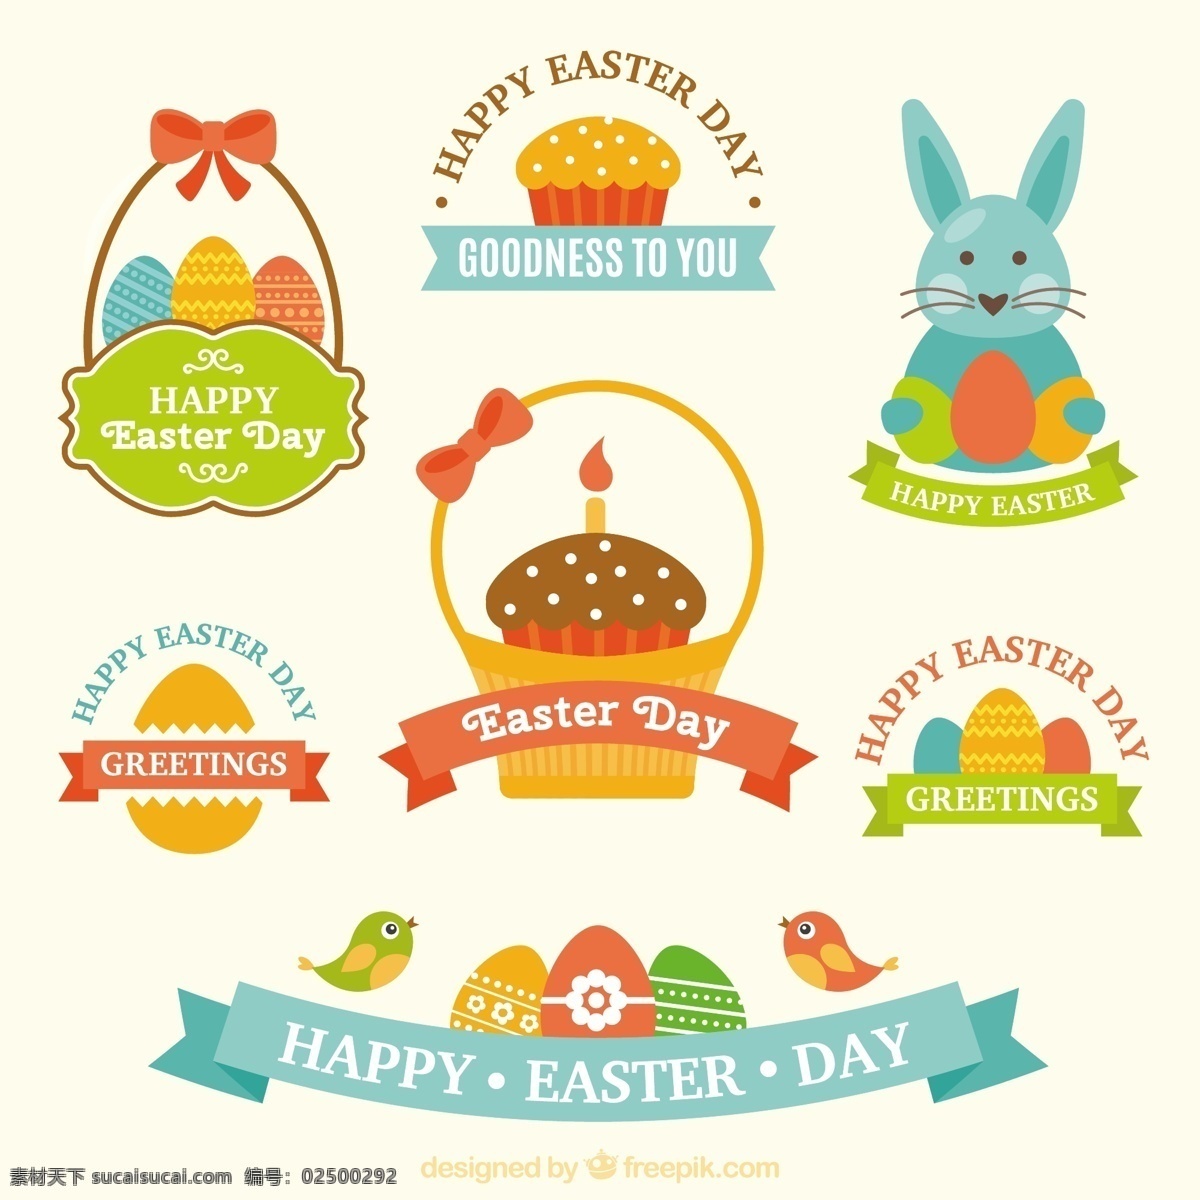 可爱 复活节 徽章 设置 蛋糕 春天 地势平坦 标签 可爱的 庆典 宗教 假日 平面设计 贴纸 鸡蛋 篮子